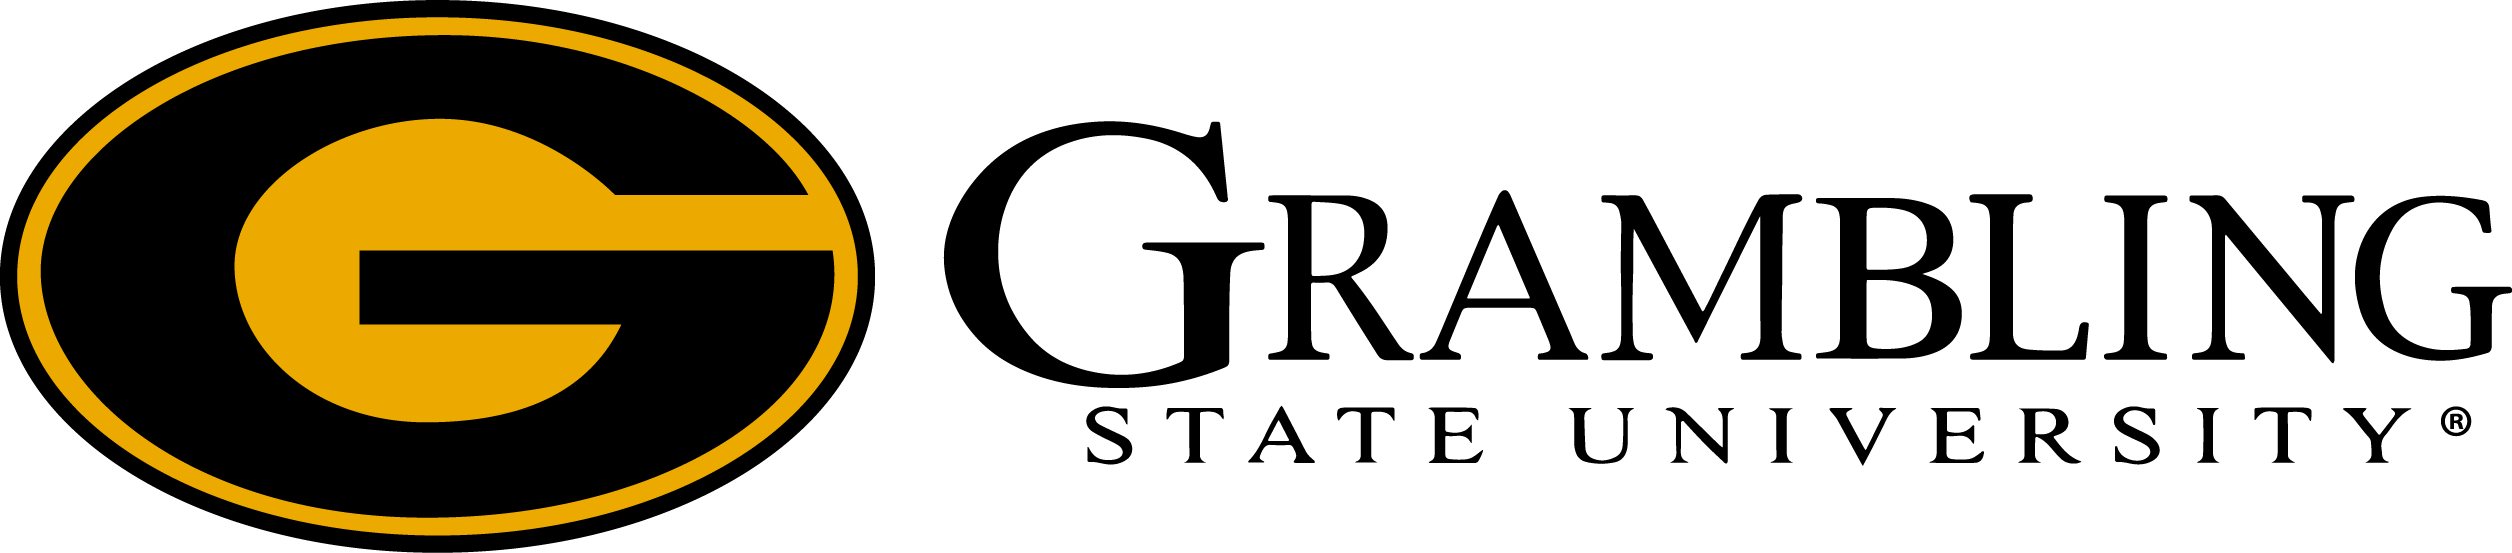 grambling-logo